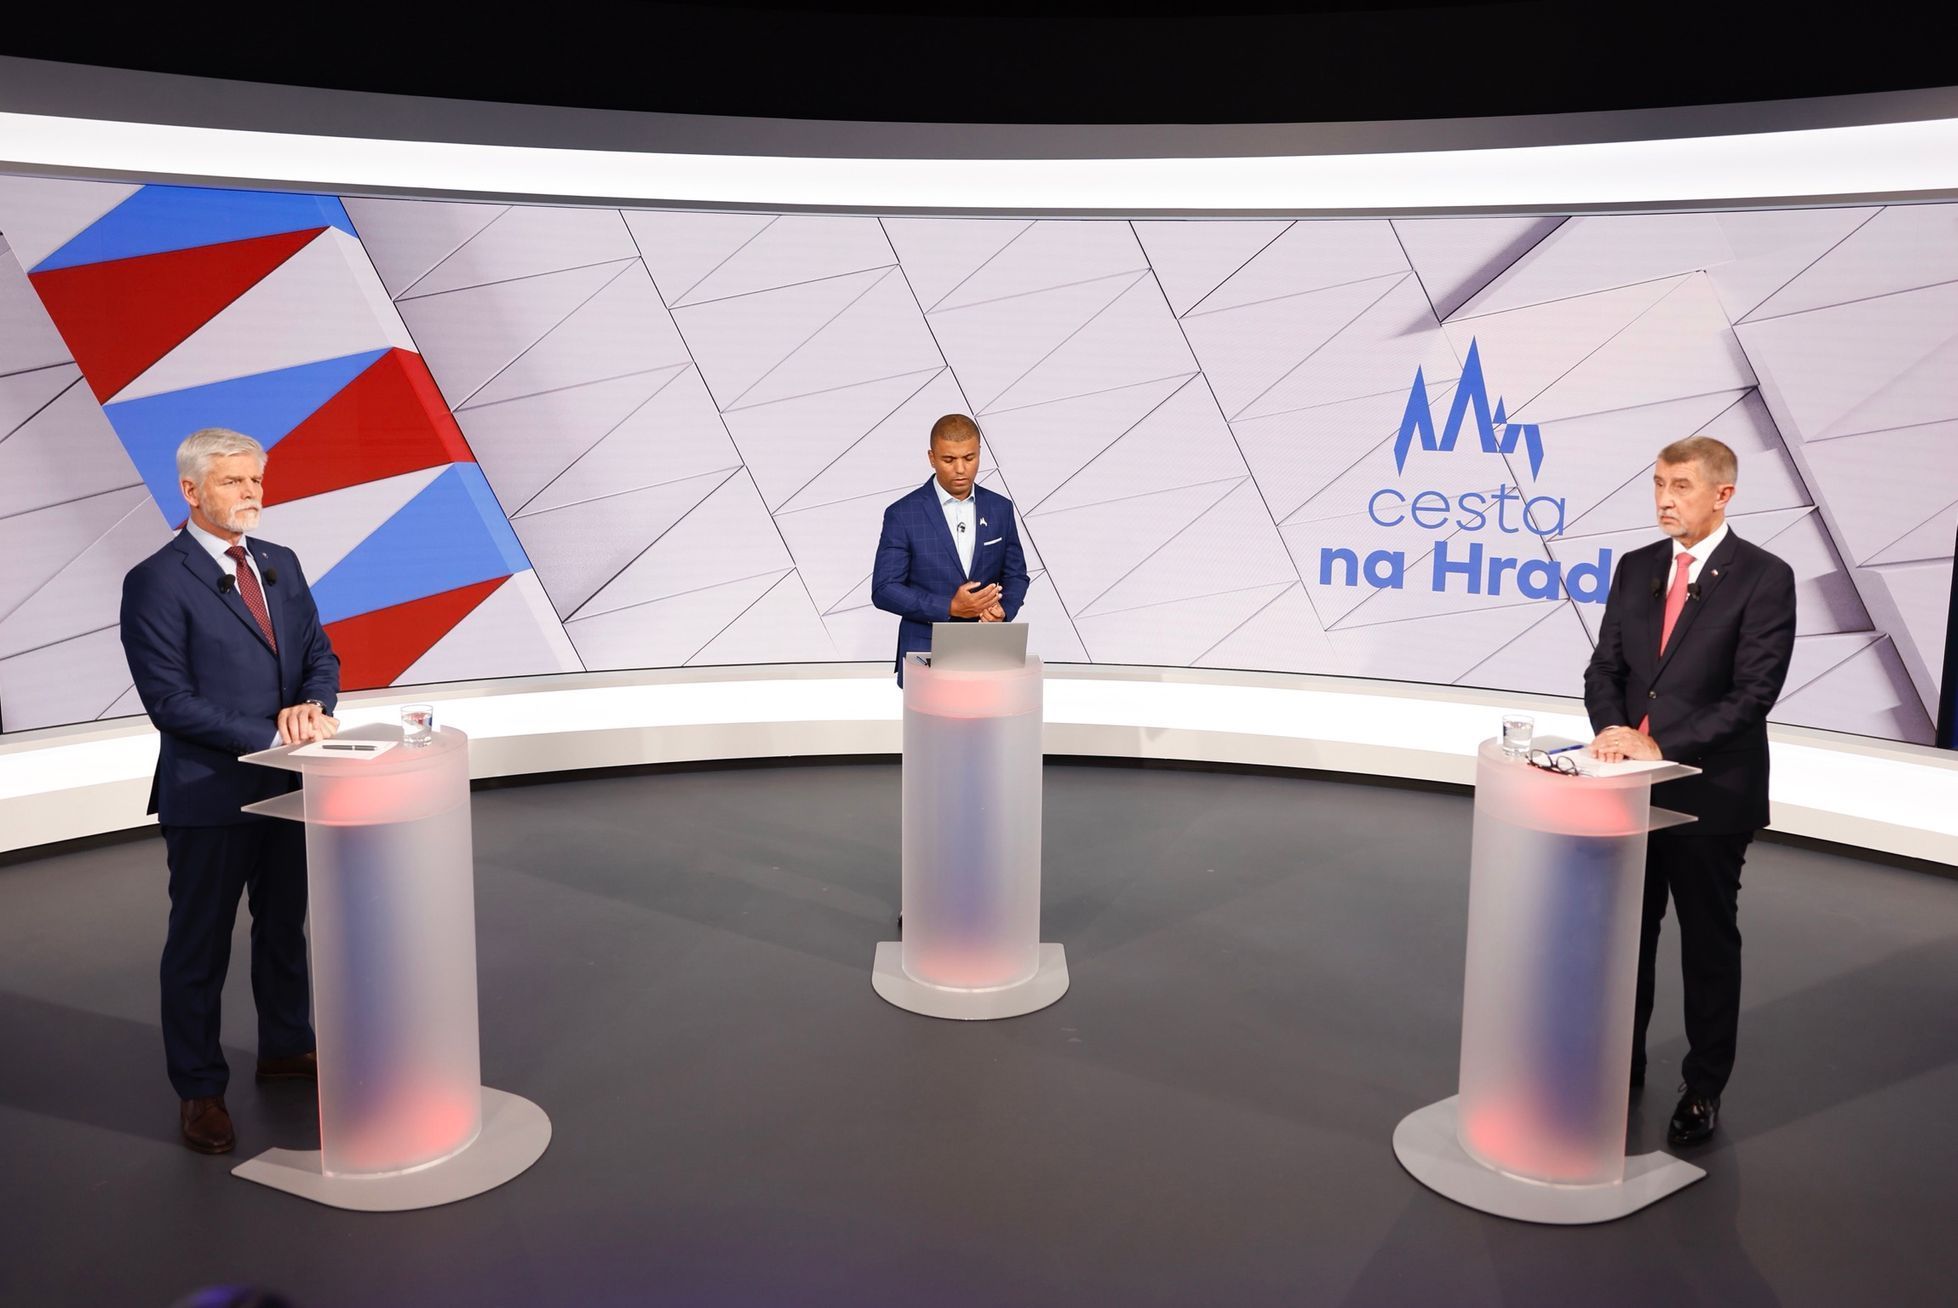 Prezidentské volby 2023, Petr Pavel, Andrej Babiš, TV Nova, debata